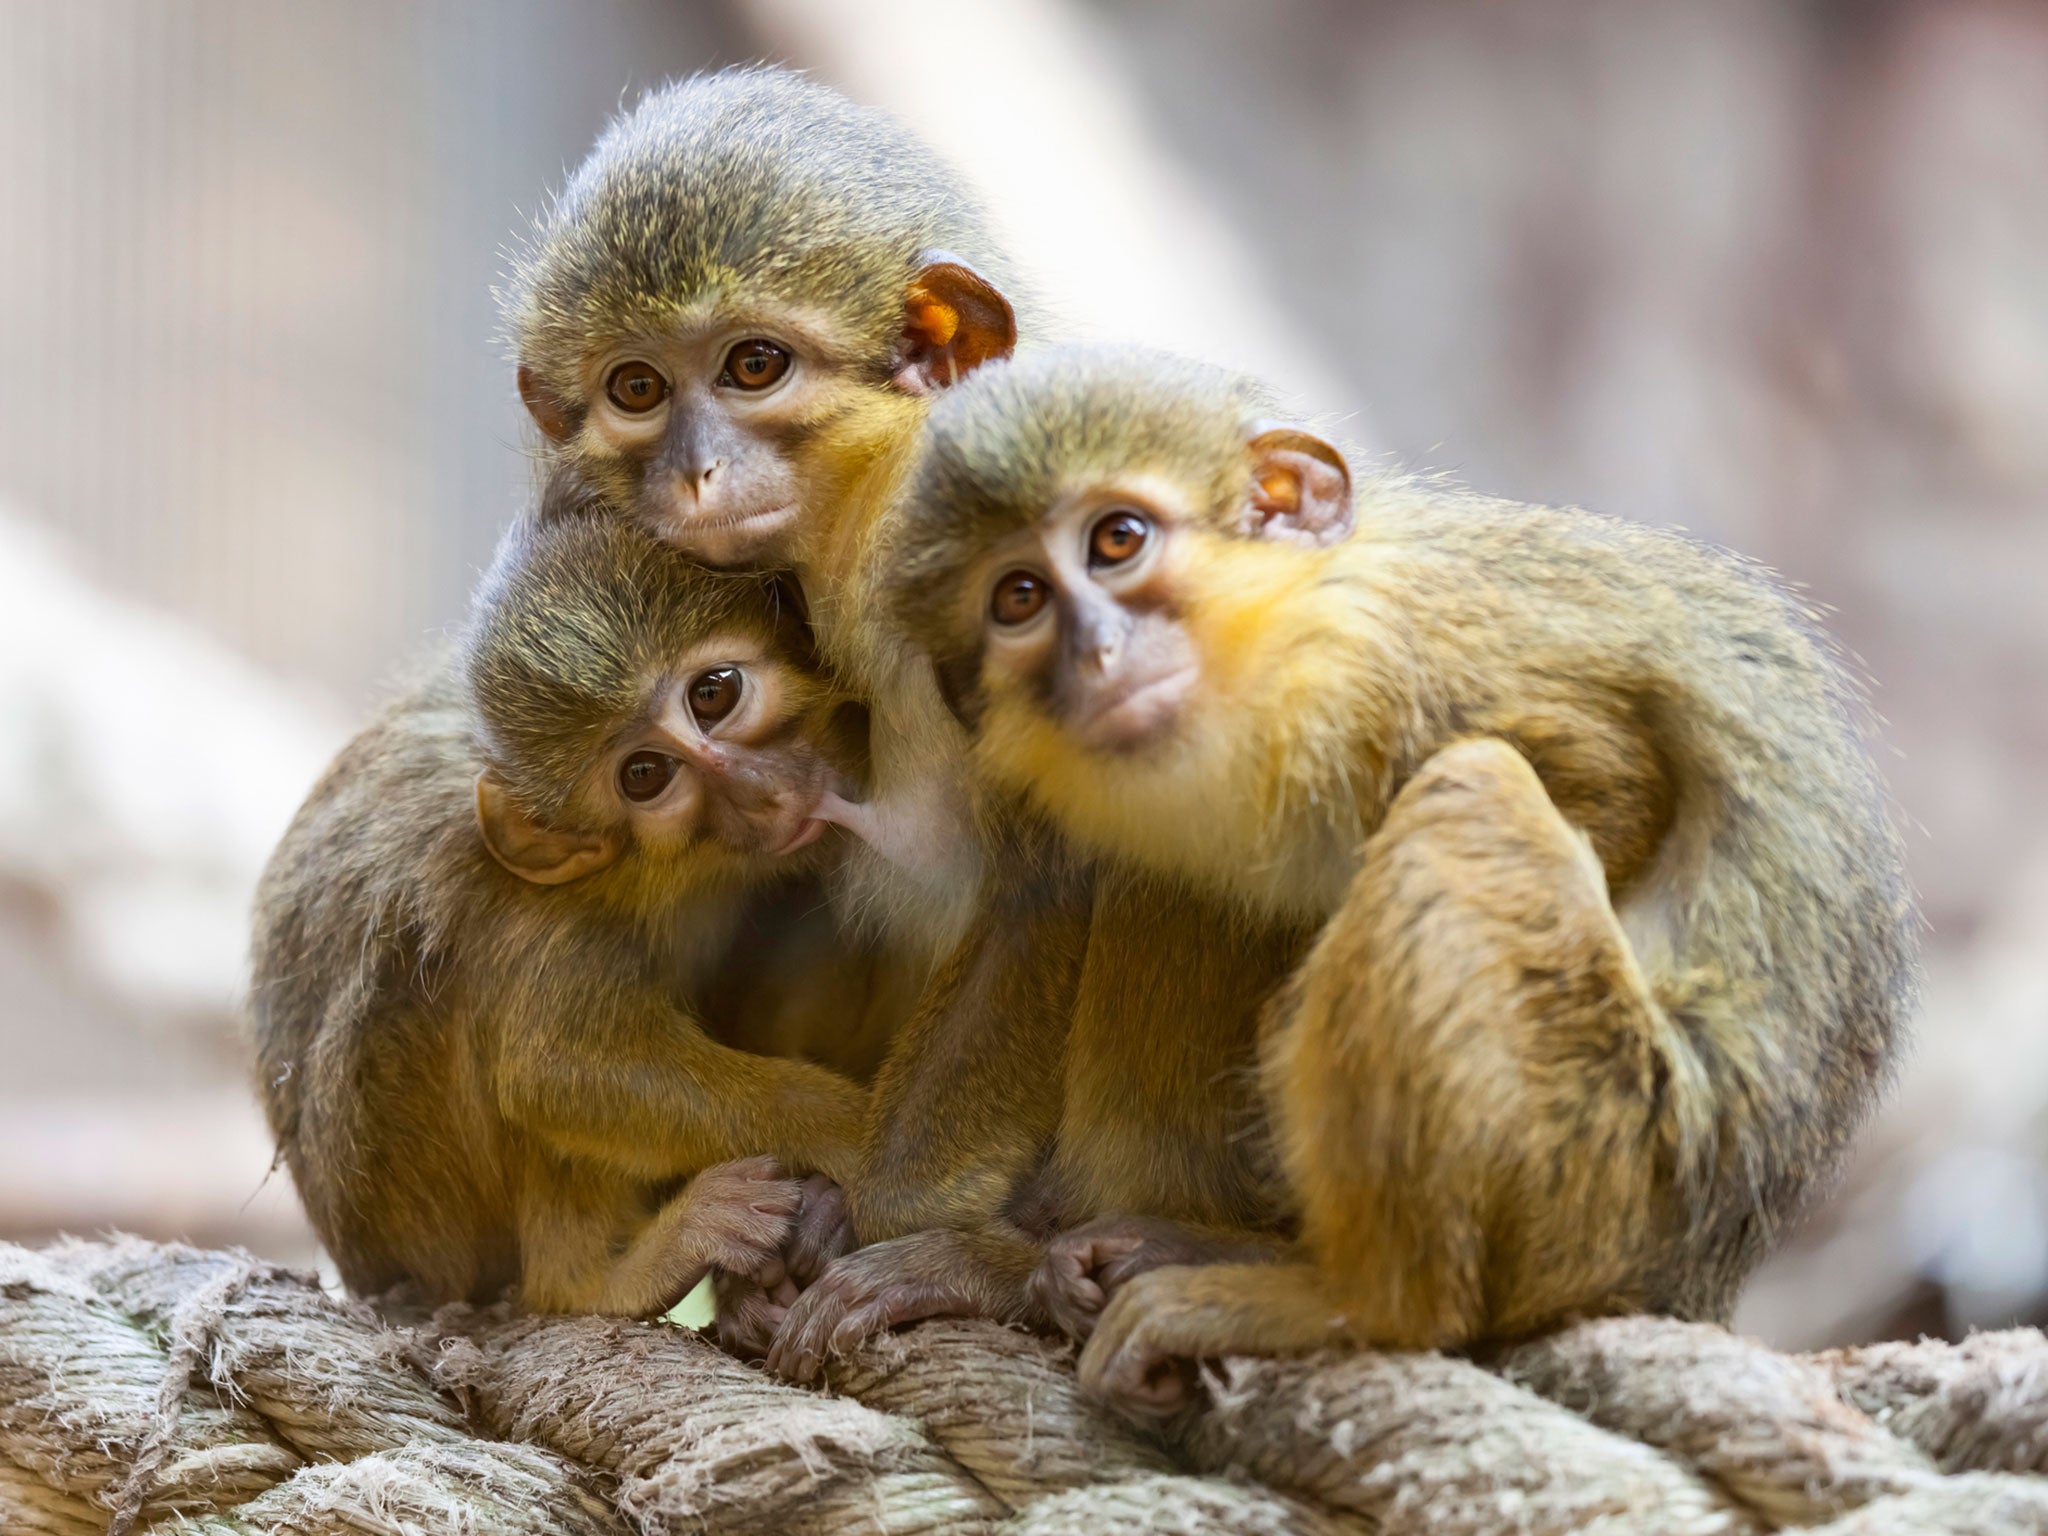 Khỉ con đáng yêu là chủ đề không thể thiếu trong bộ sưu tập hình ảnh của bạn. Những bức ảnh với chú khỉ nhỏ xinh đẹp và vui nhộn này sẽ đưa bạn đến không gian sống động của thiên nhiên.